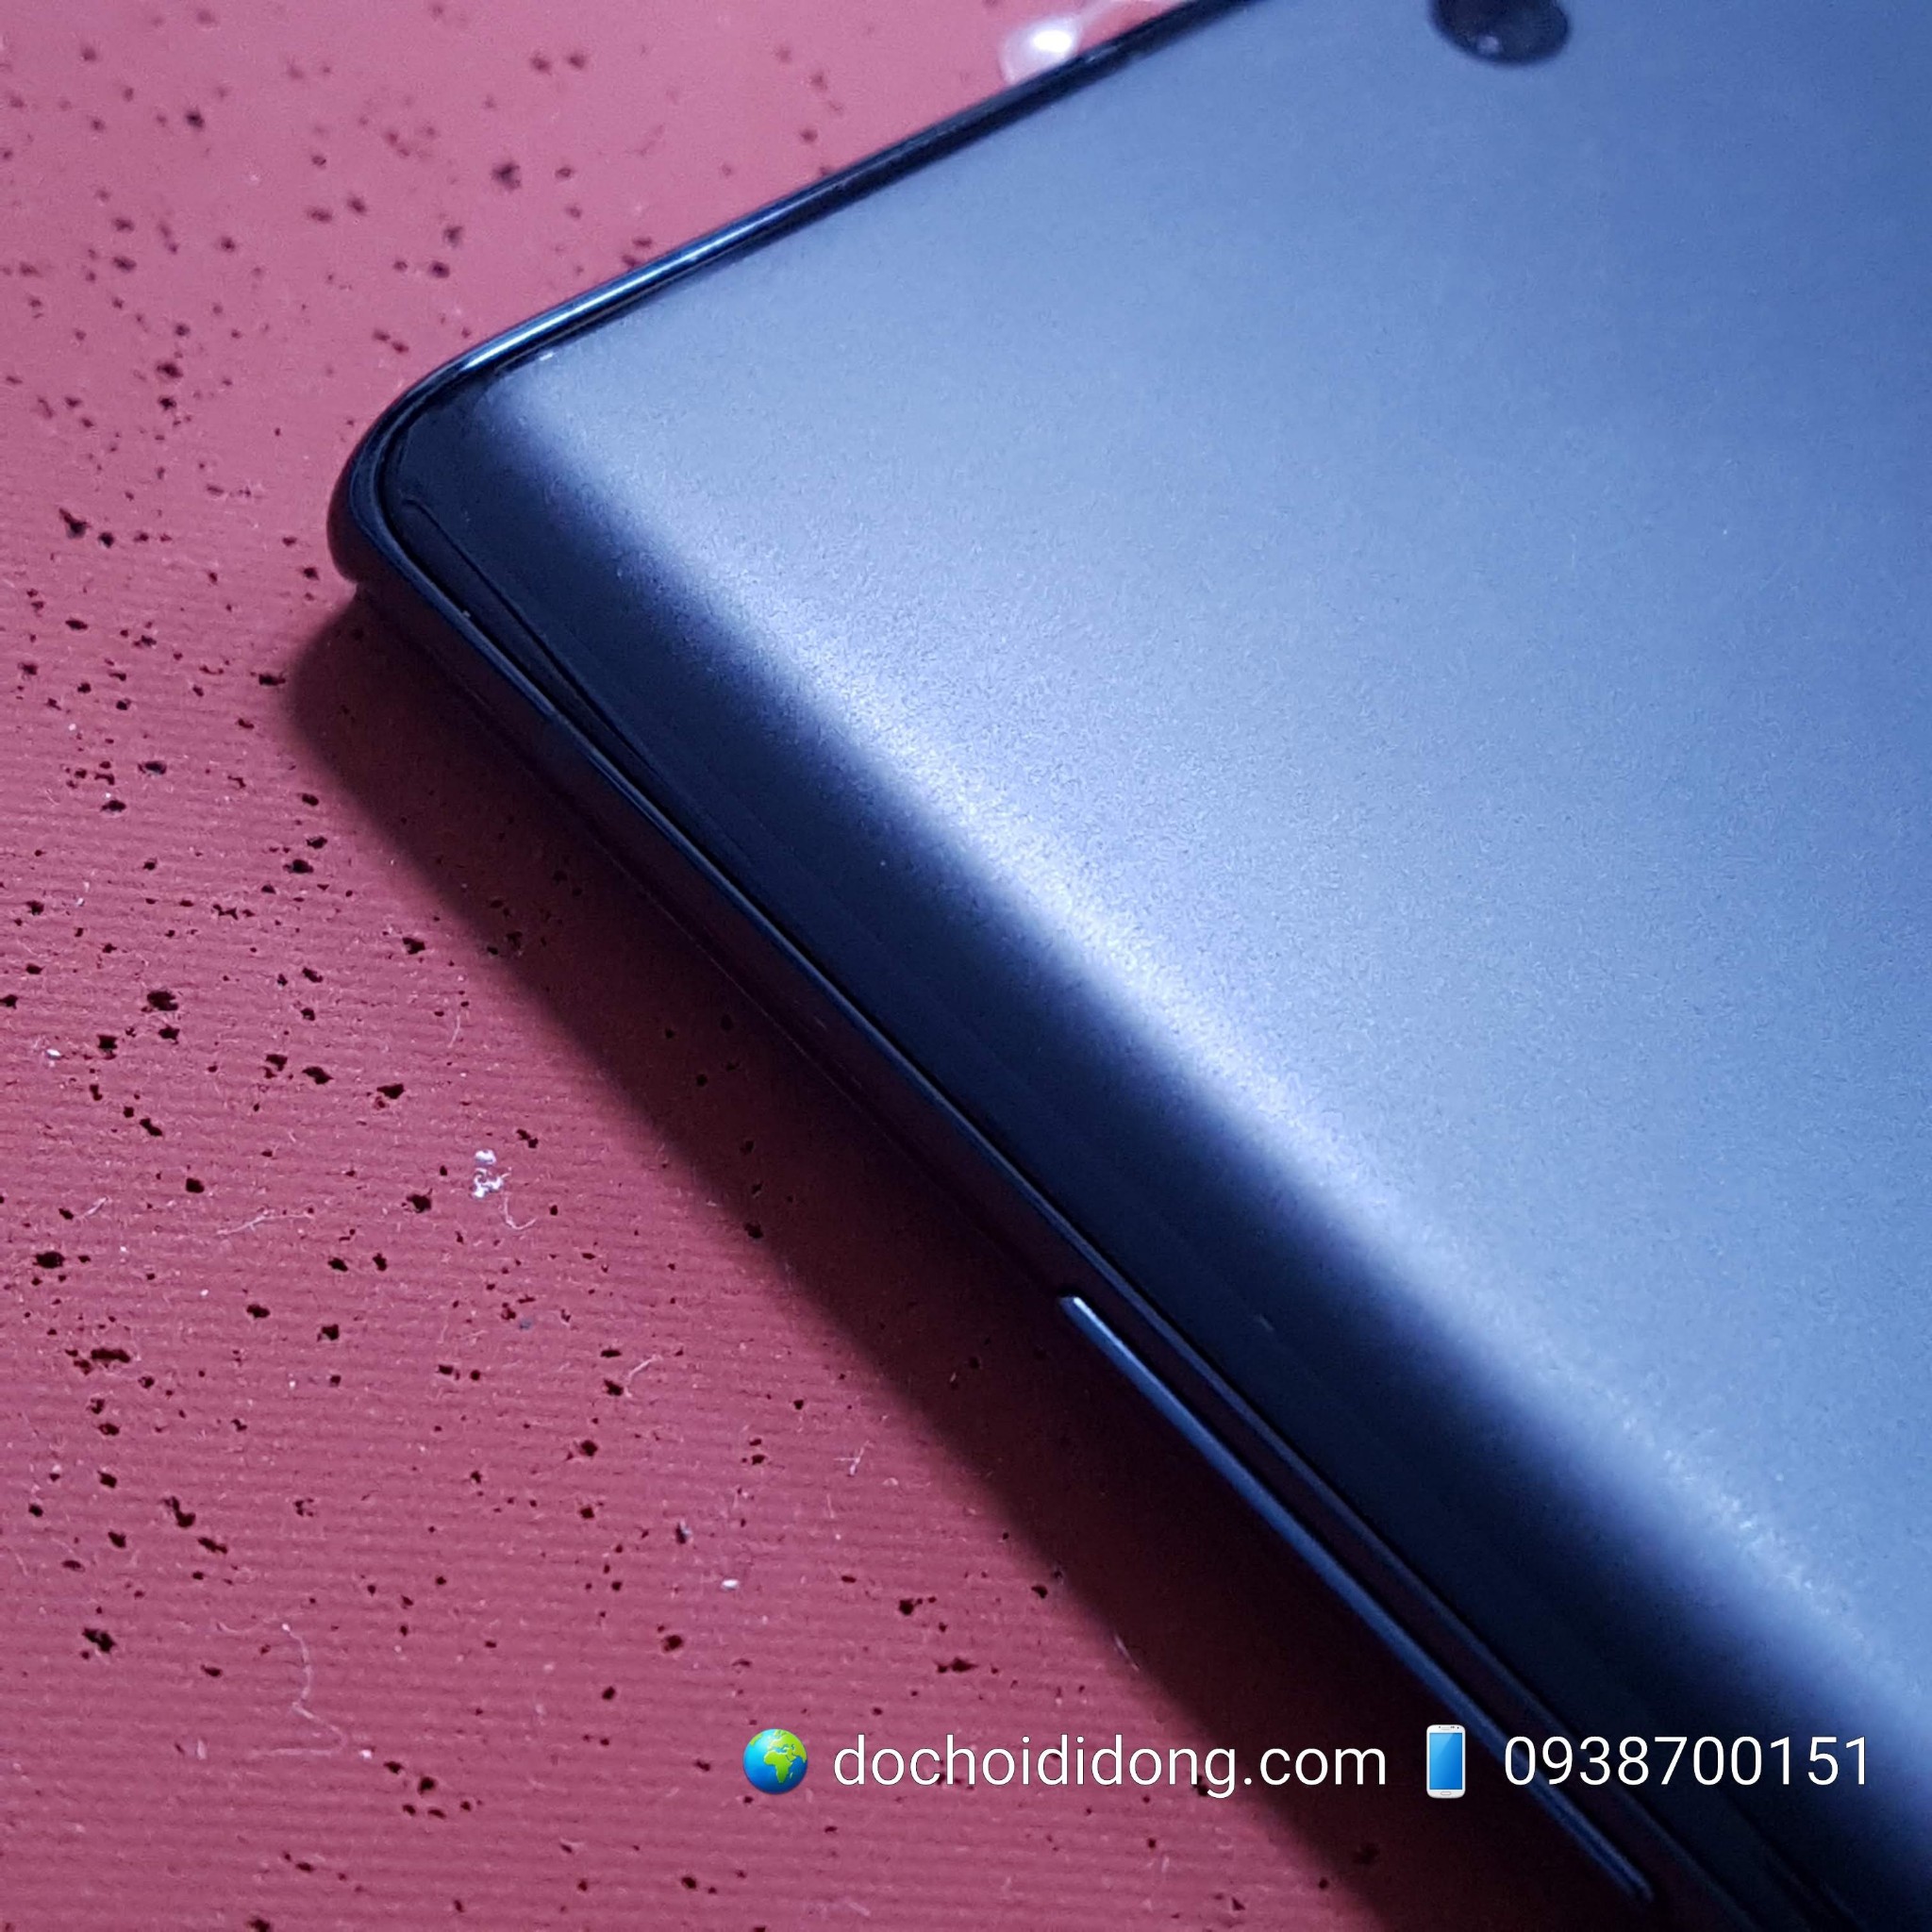 Miếng dán PPF Rock Samsung Note 10 Plus trong, nhám, đổi màu cao cấp